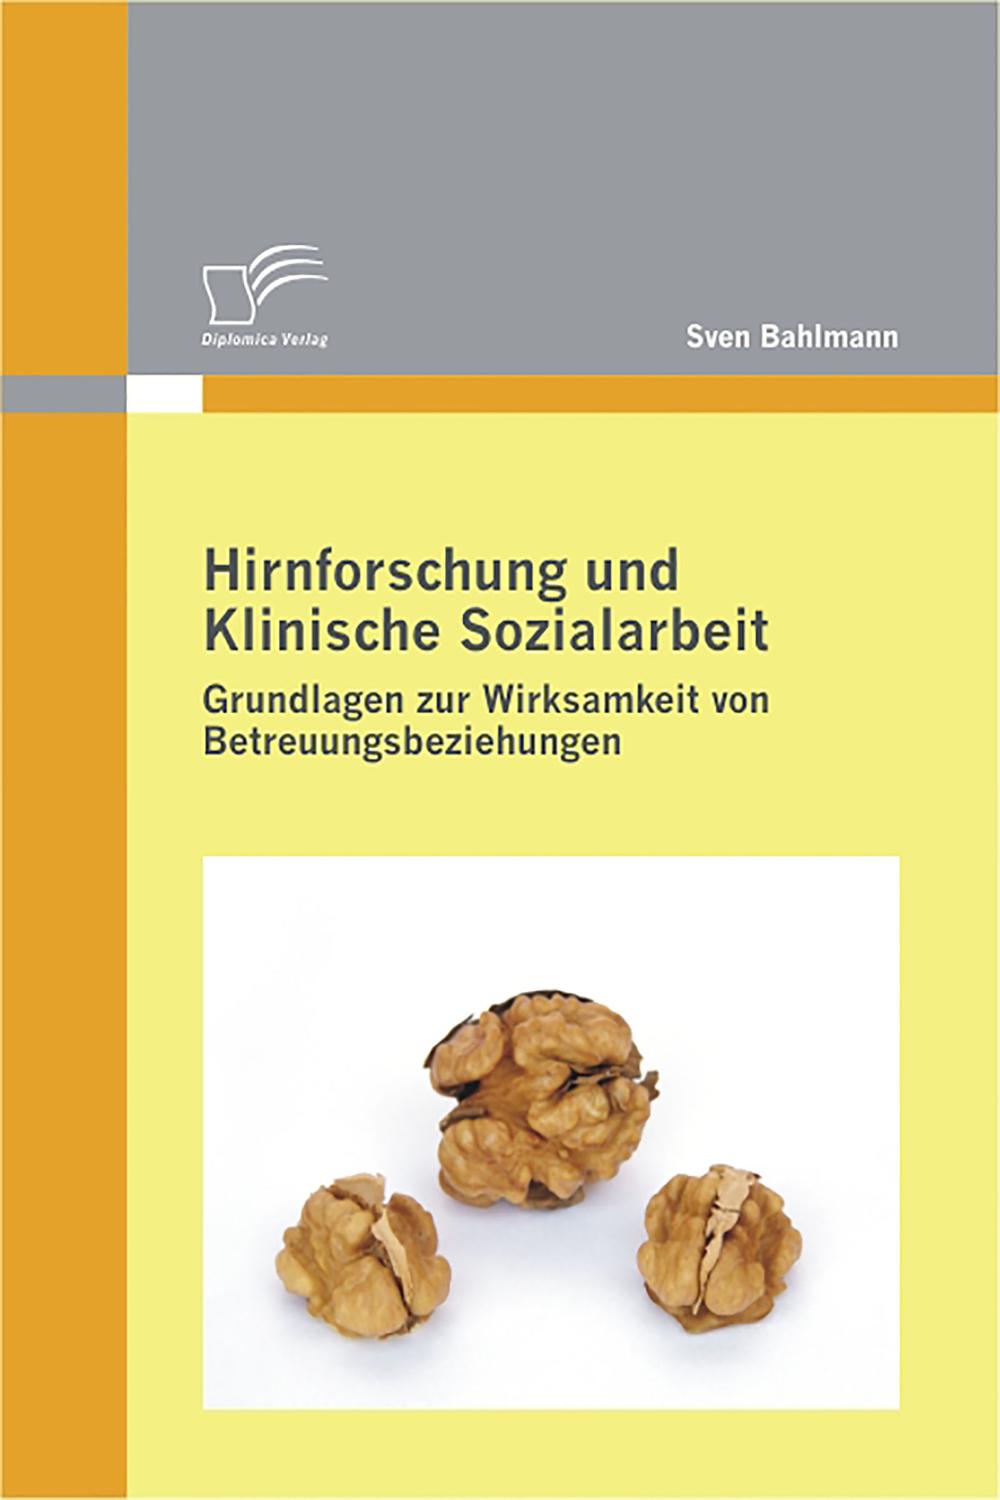 Hirnforschung und Klinische Sozialarbeit: Grundlagen zur Wirksamkeit von Betreuungsbeziehungen - Sven Bahlmann,,